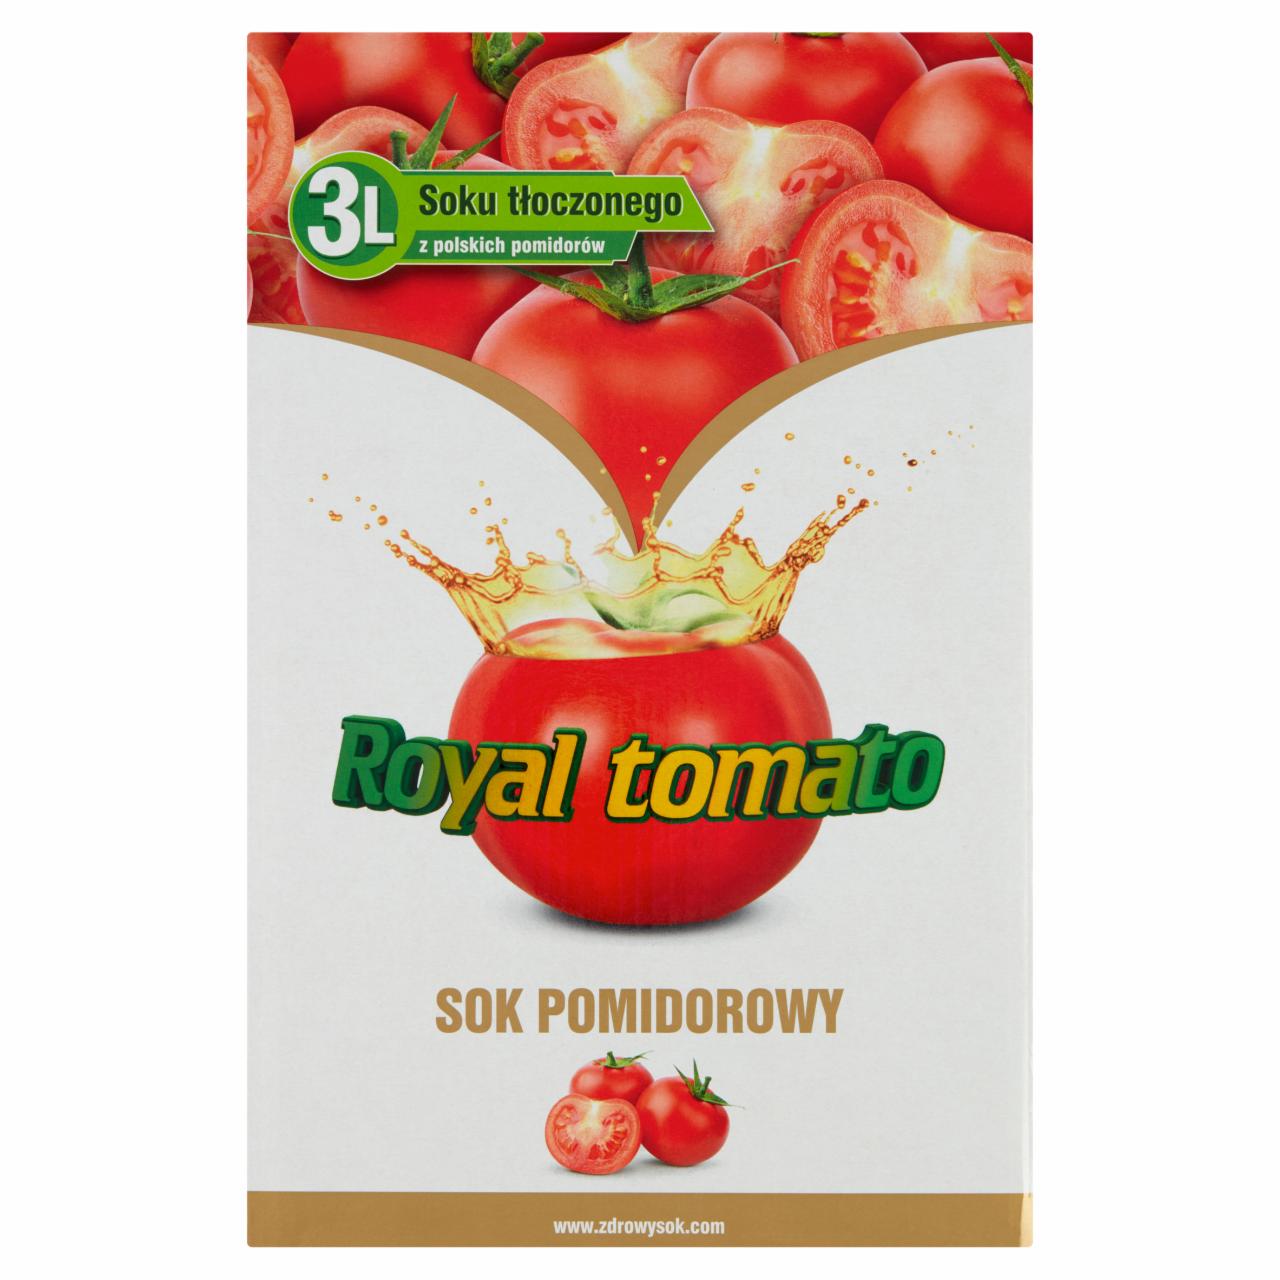 Zdjęcia - Royal tomato Sok pomidorowy 3 l